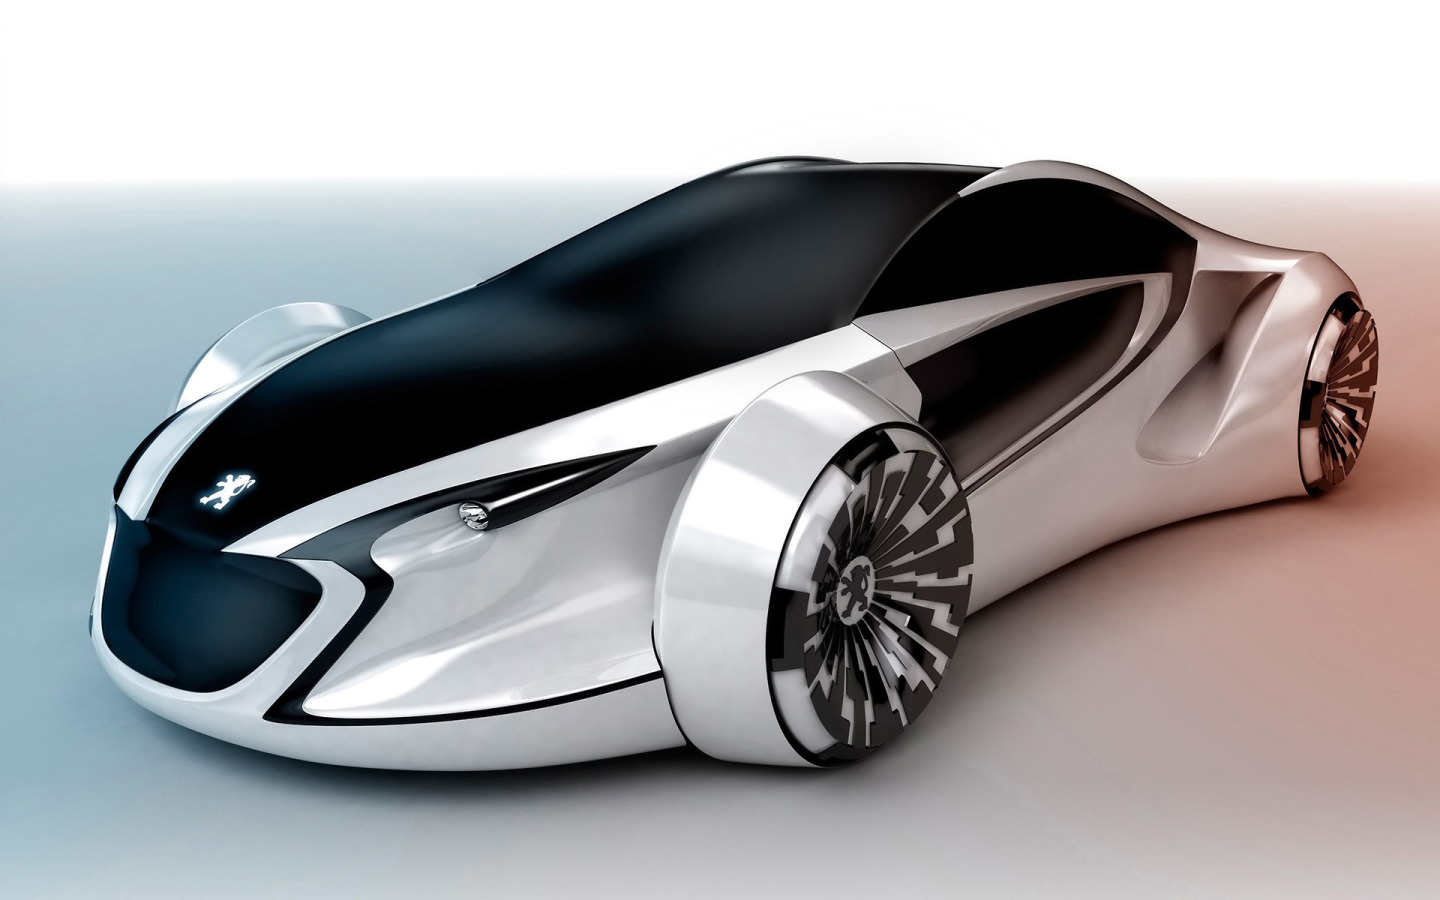 Прототип будущего. Машина Holden Efijy Concept. Машины будущего. Футуристические автомобили. Прототипы автомобилей будущего.